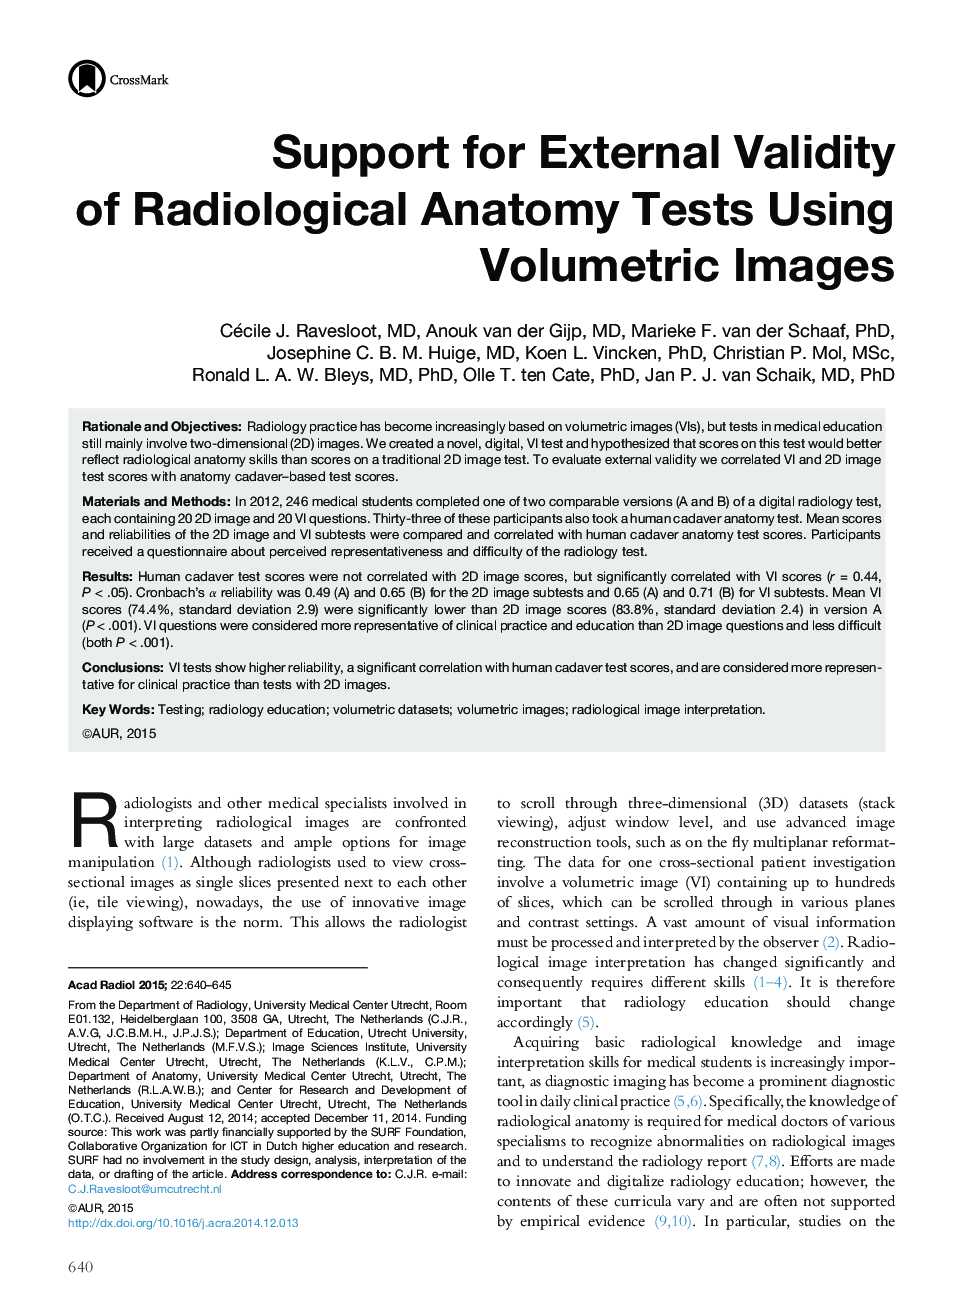 حمایت از اعتبار خارجی آزمایشات آناتومی رادیولوژیکی با استفاده از تصاویر حجمی 